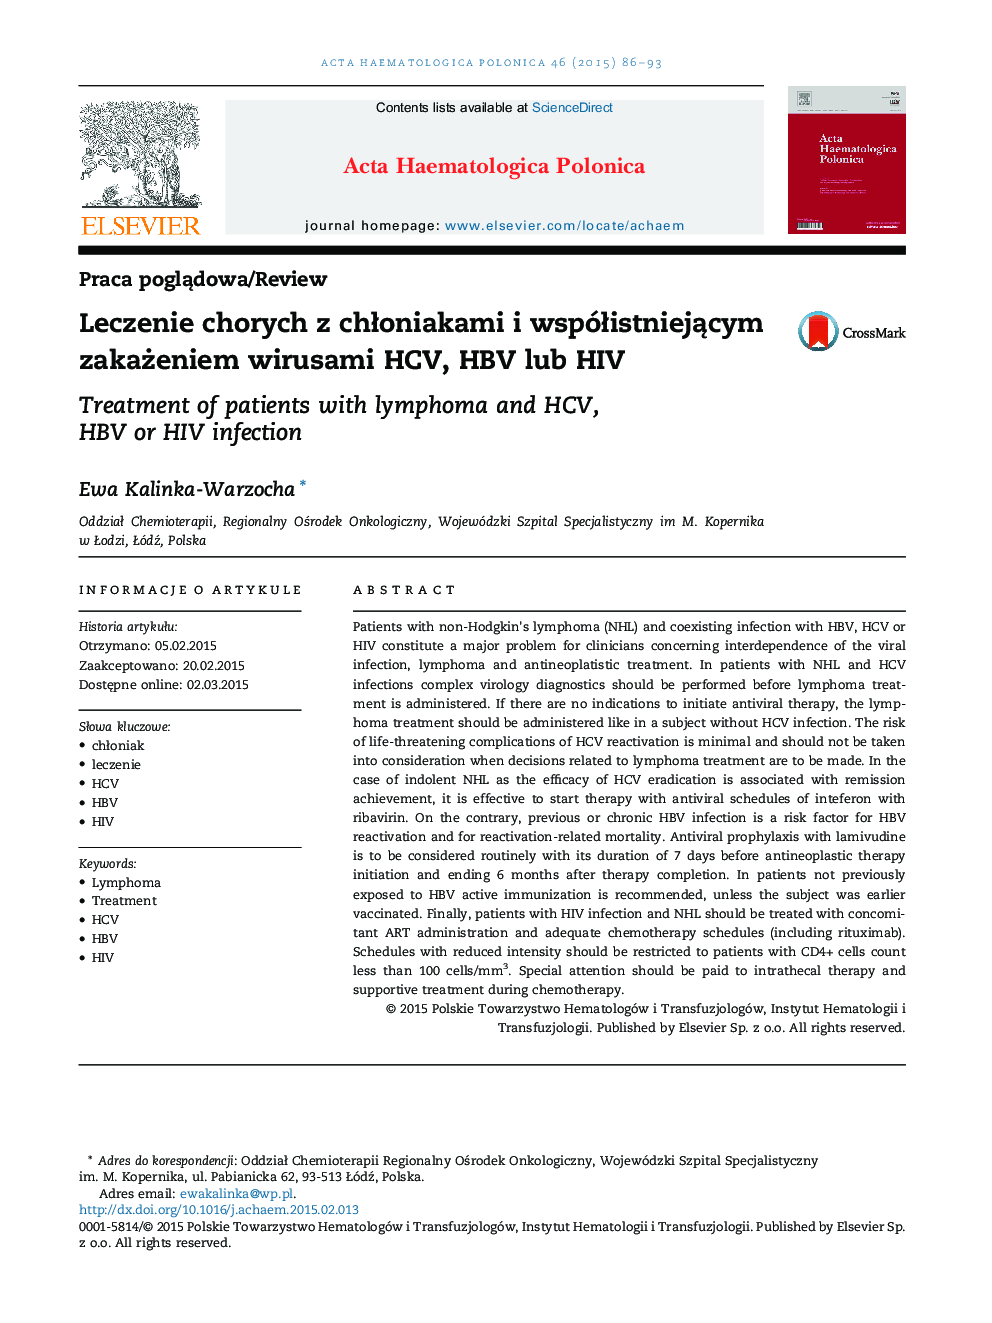 Leczenie chorych z chłoniakami i współistniejącym zakażeniem wirusami HCV, HBV lub HIV